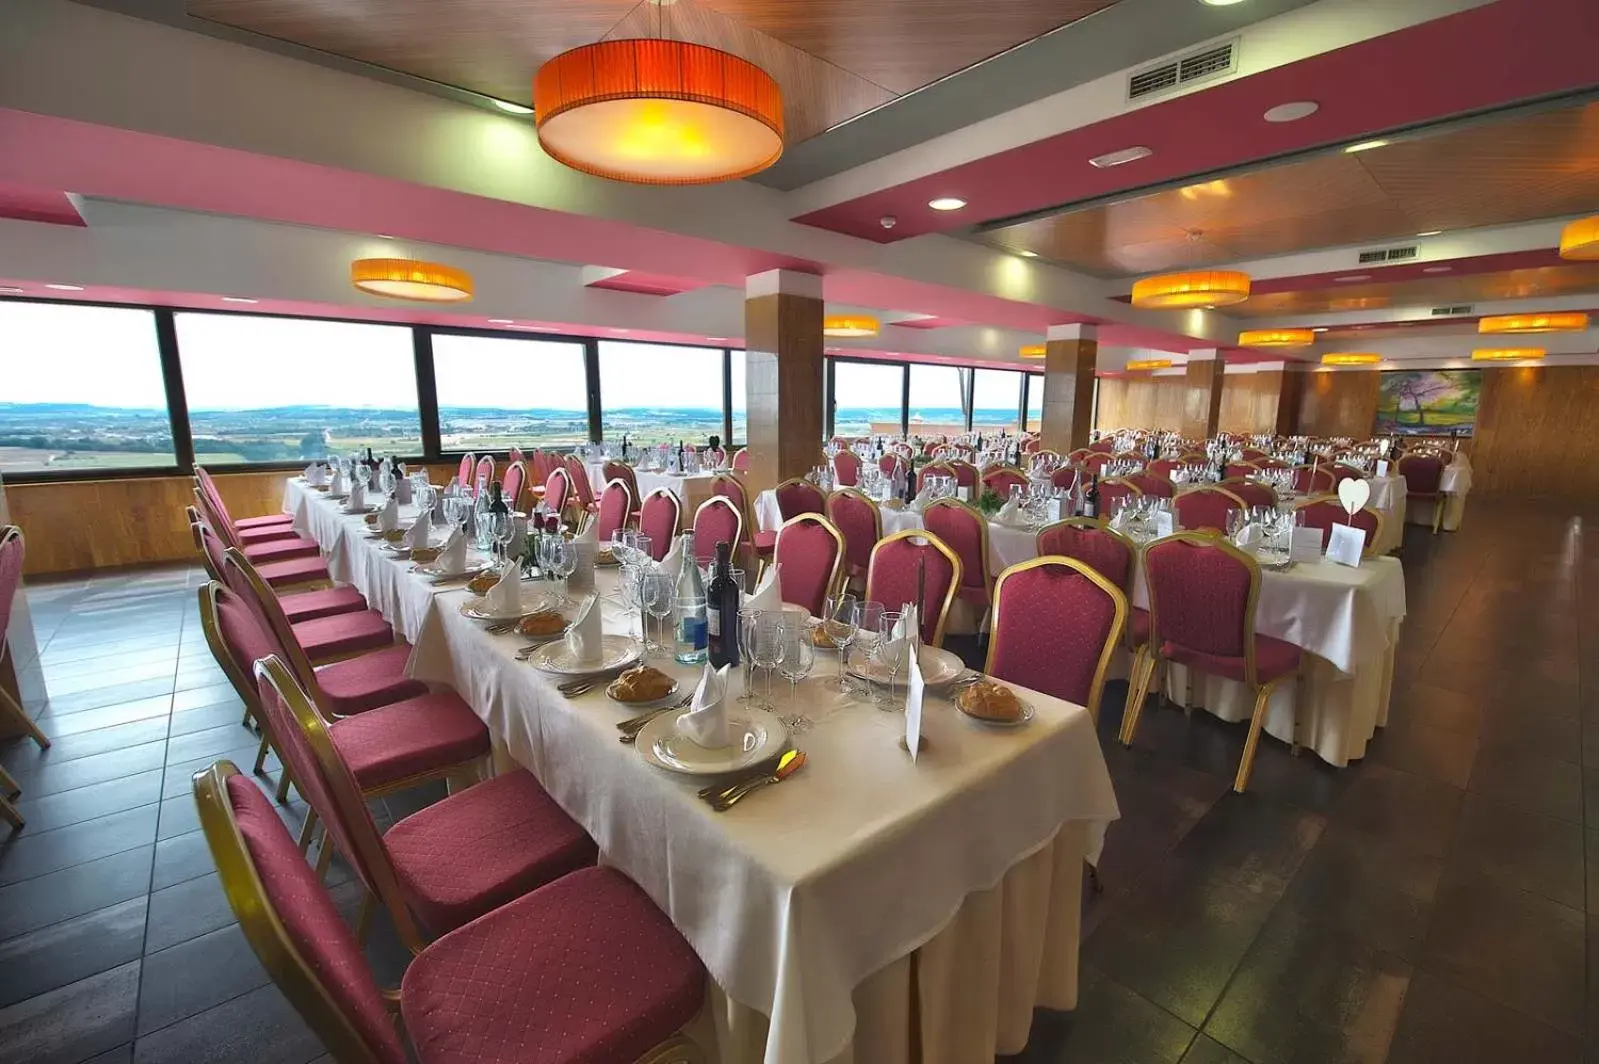 Restaurant/places to eat, Banquet Facilities in Hospedium Hotel Juan II